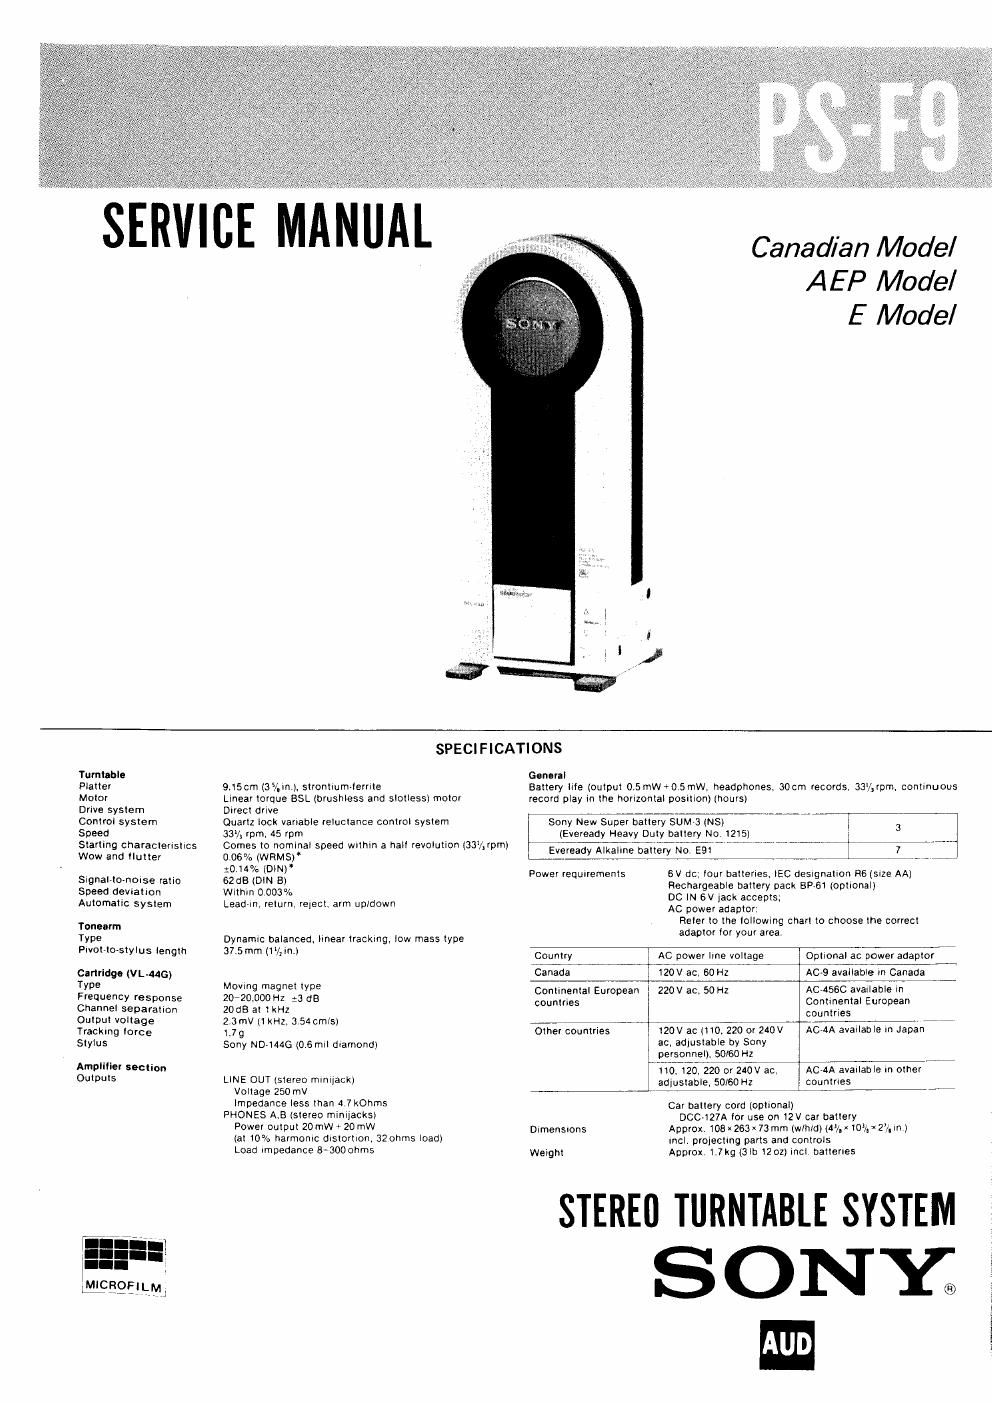 sony ps f9 service manual